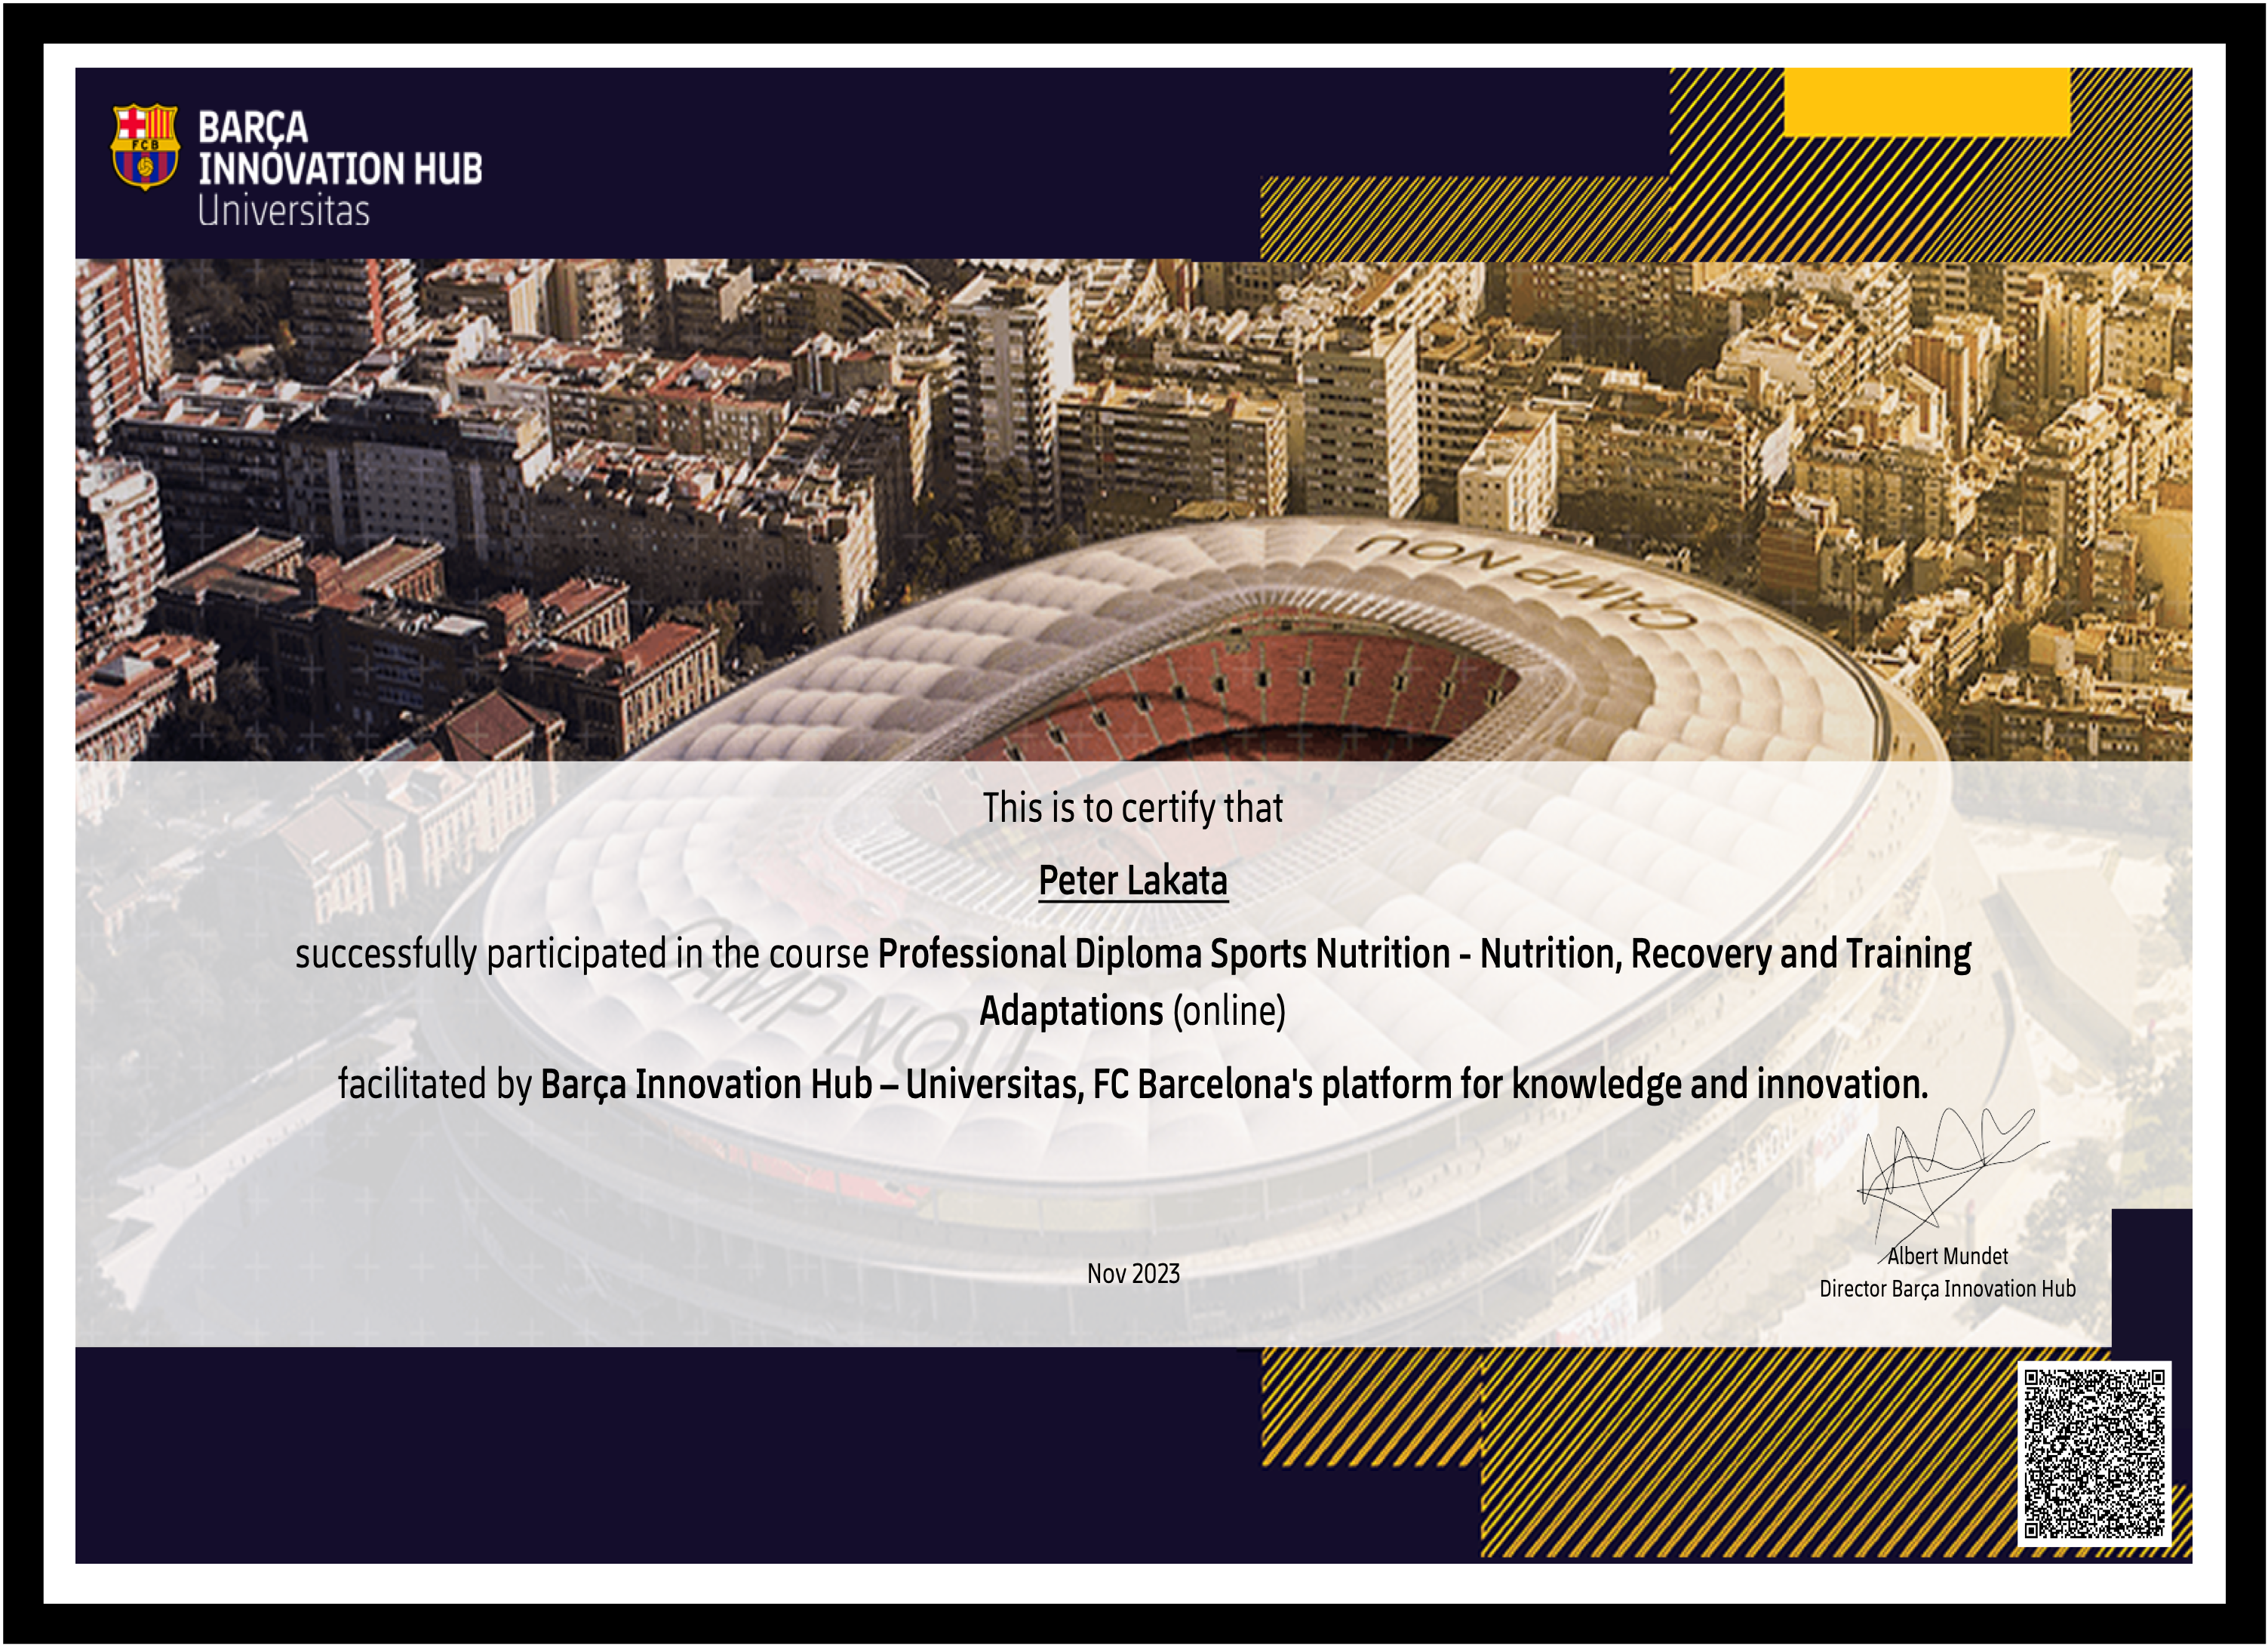 Barcelona Innovation Hub certificate for Peter Lakata